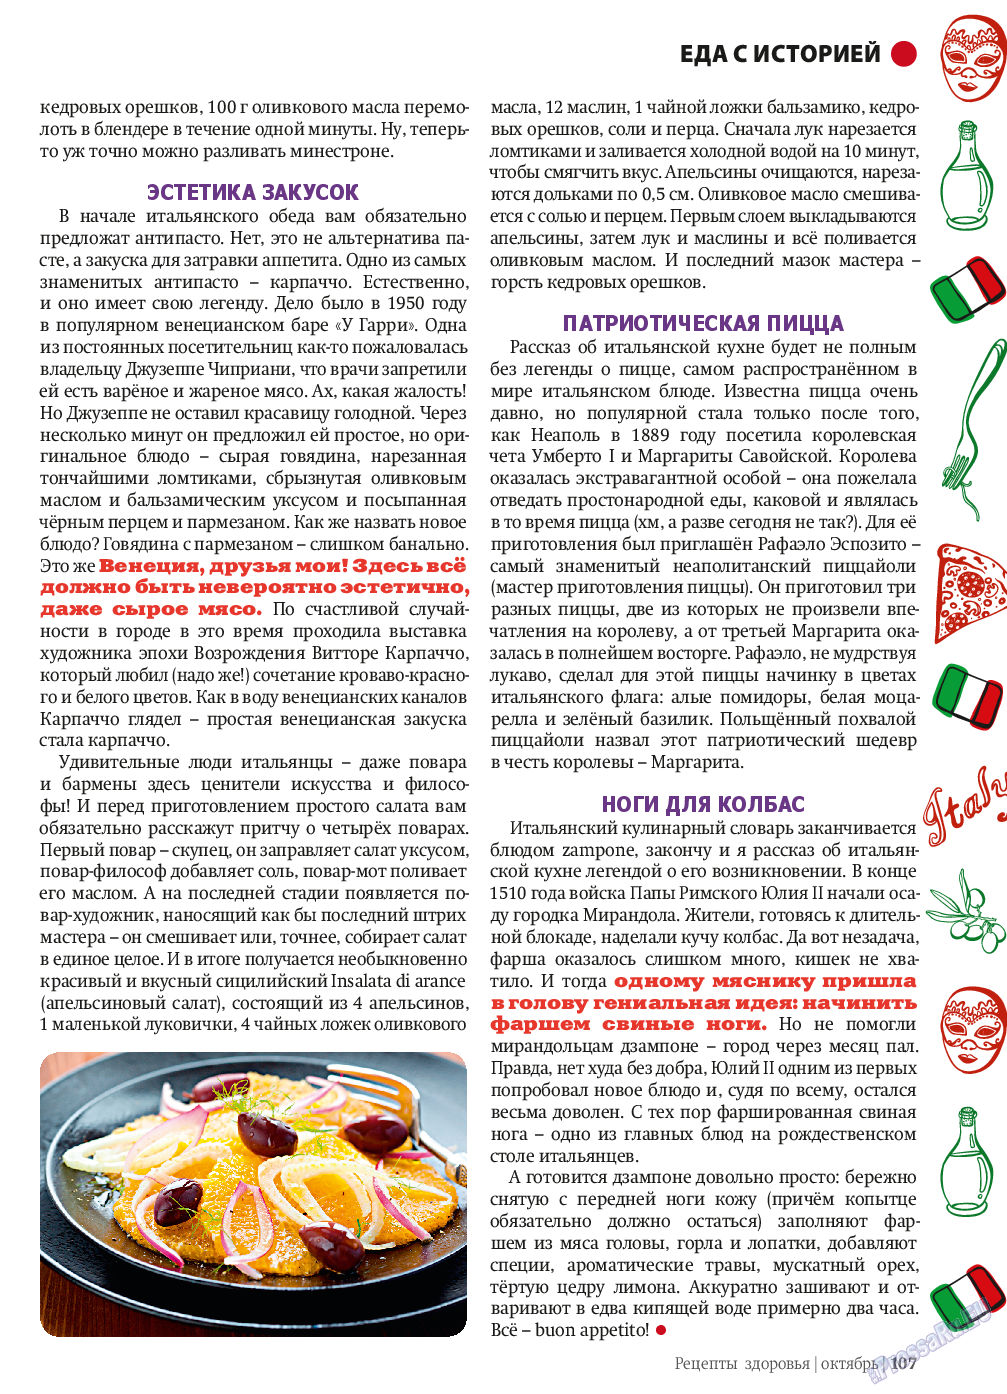 Рецепты здоровья, журнал. 2013 №10 стр.107